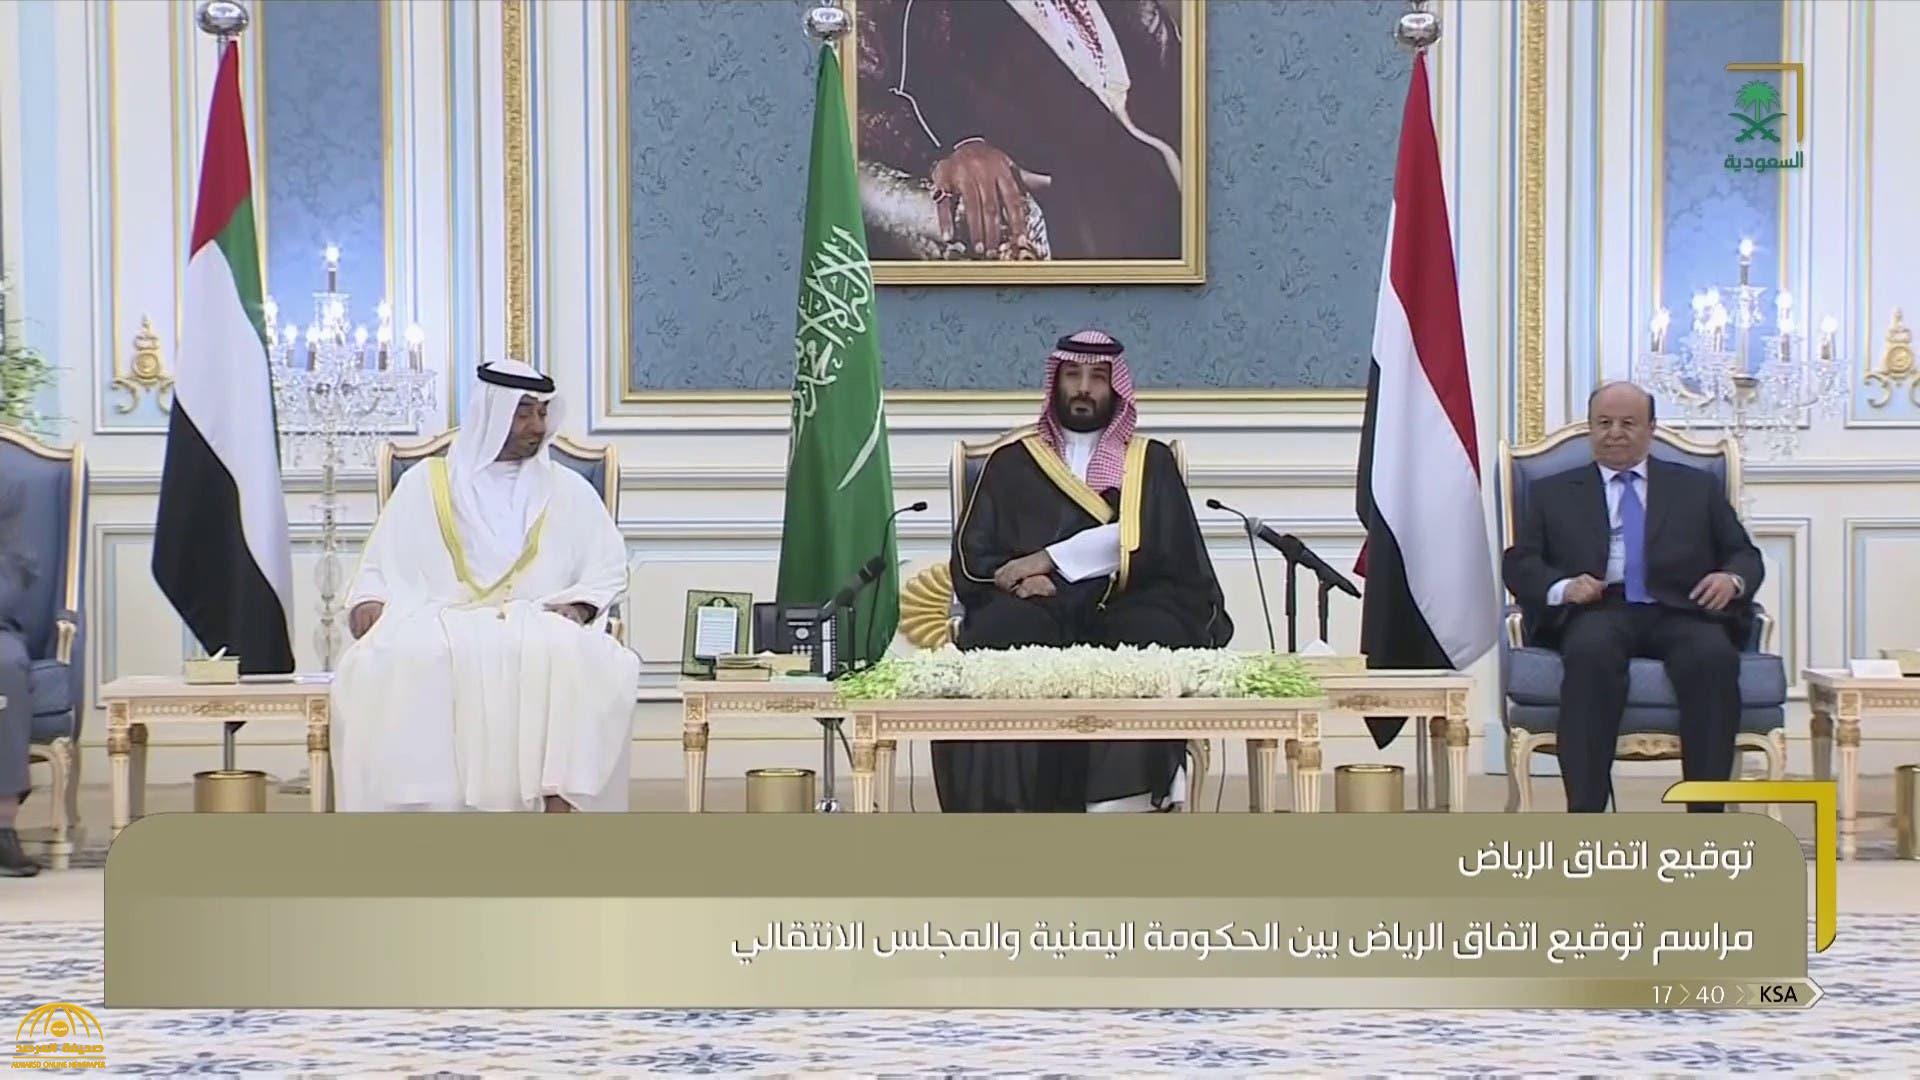 شاهد :  لحظة التوقيع على اتفاق الرياض بين حكومة اليمن والمجلس الانتقالي بحضور ولي العهد والشيخ محمد بن زايد